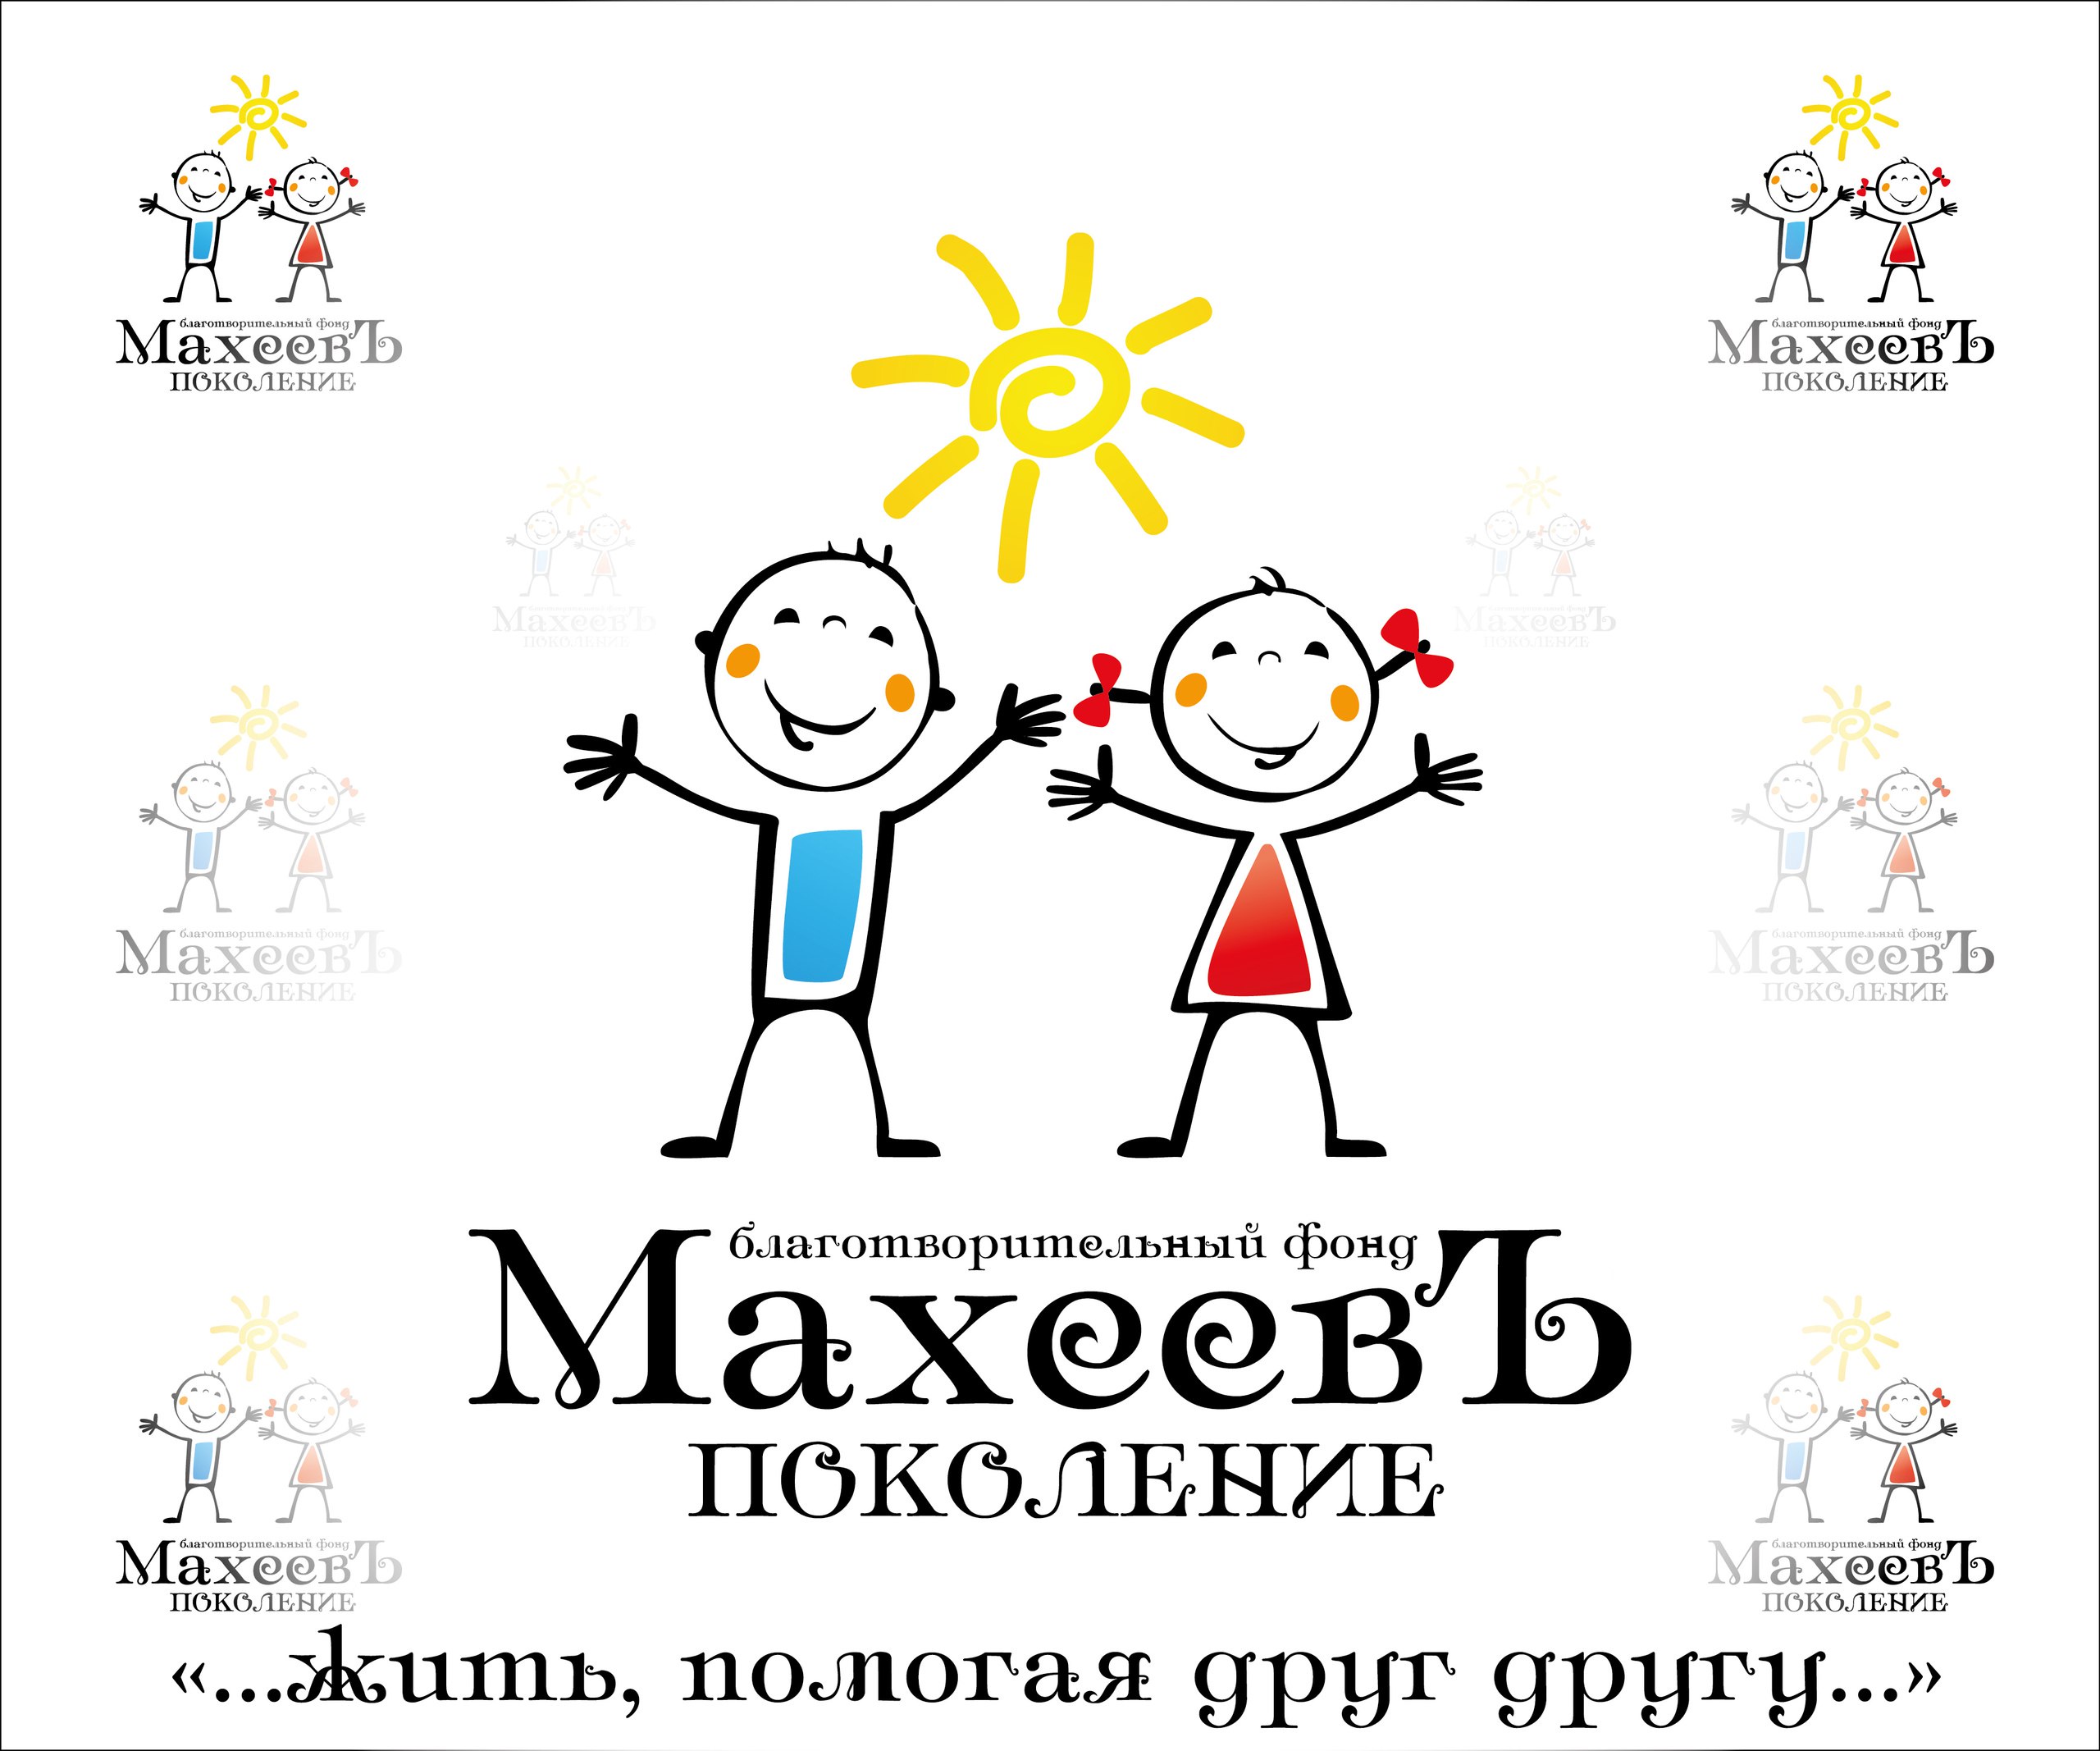 фото: Благотворительный фонд «Махеев» радует юных пациентов ДРКБ в Казани